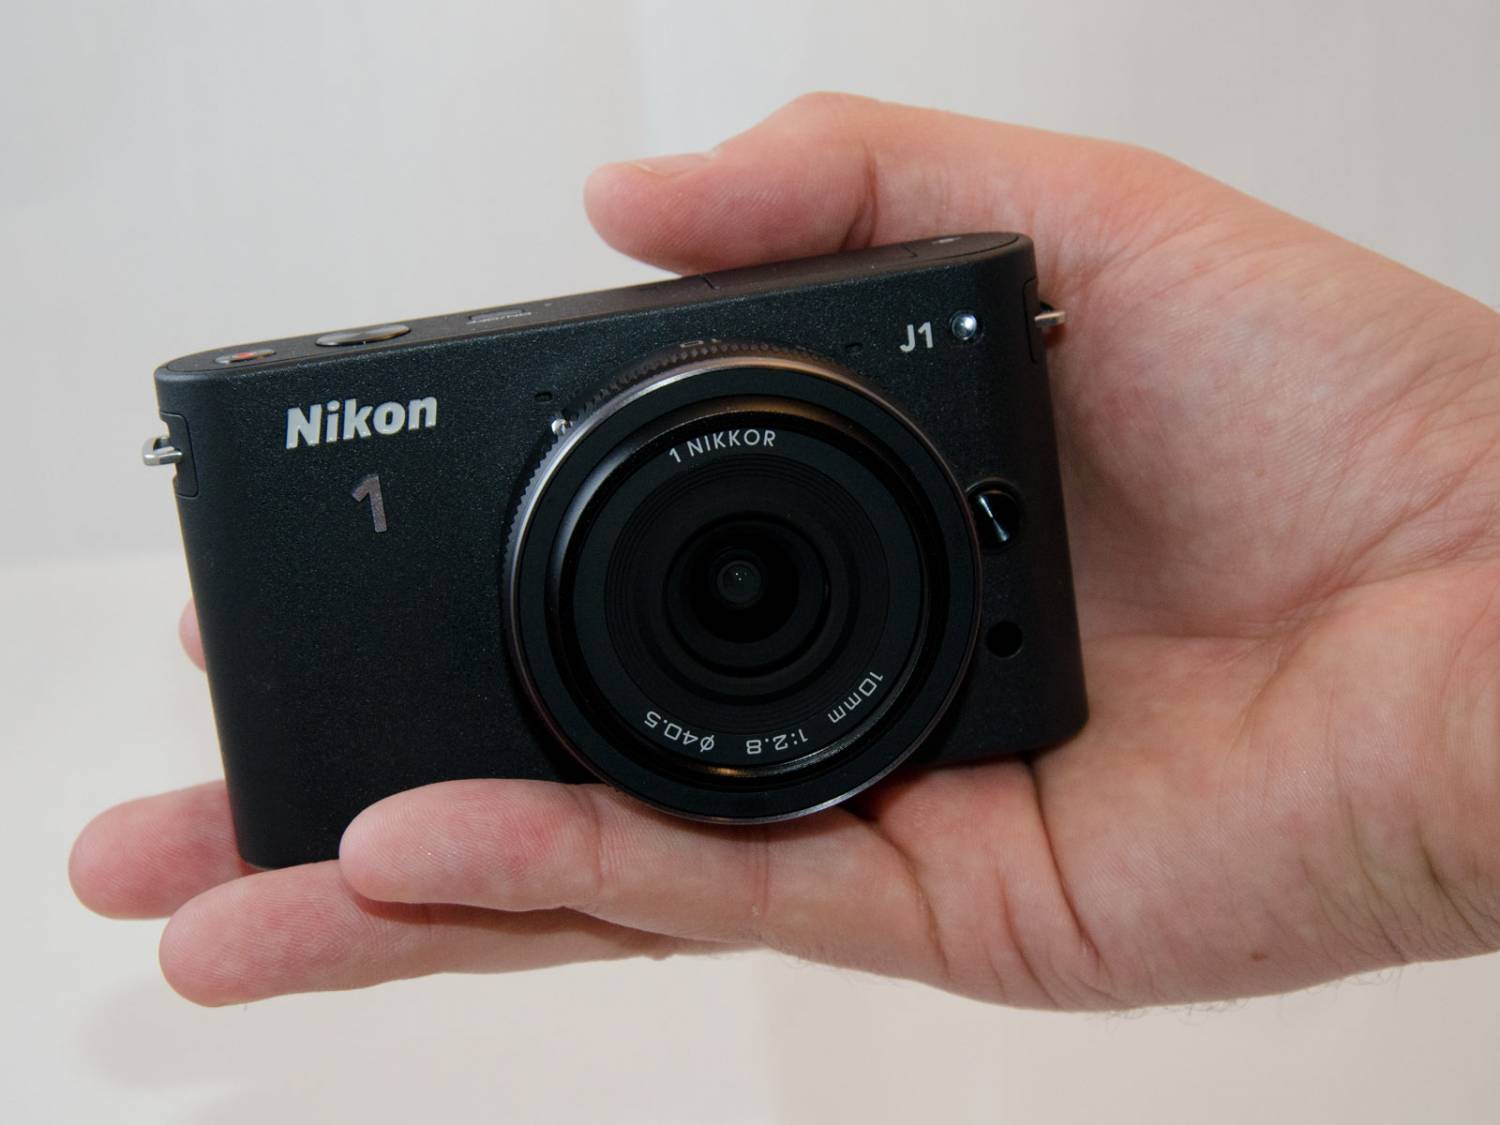 Nikon 1 j1 Kit. Звезды Nikon 1 j1. Компактные 18